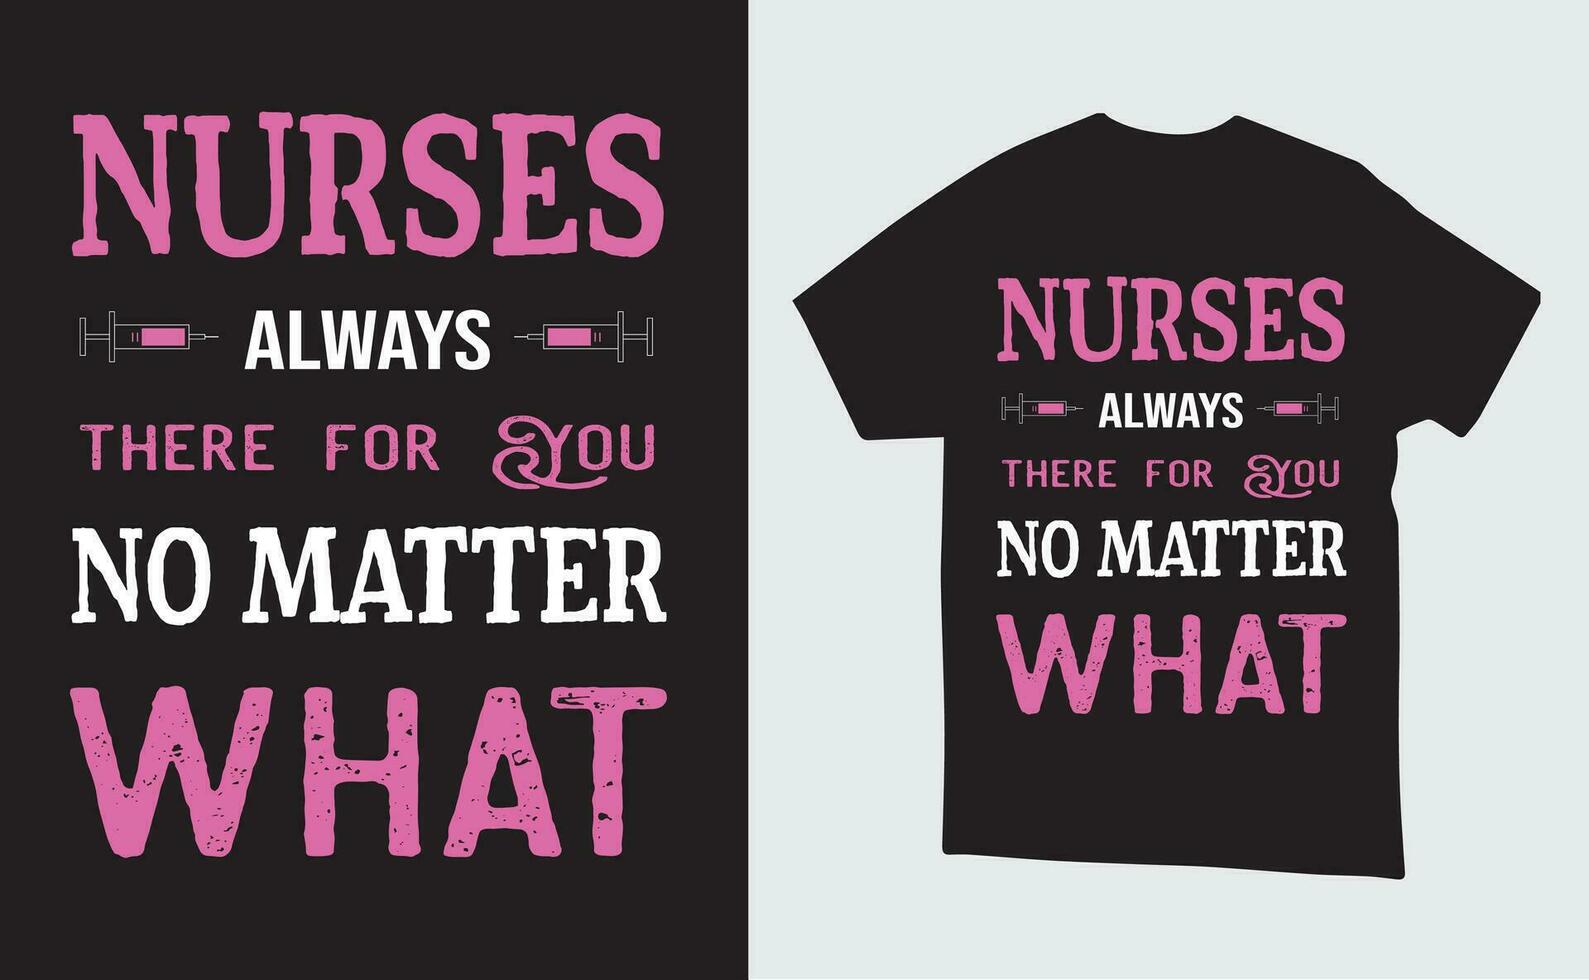 vector verpleegster illustratie t-shirt of poster ontwerp